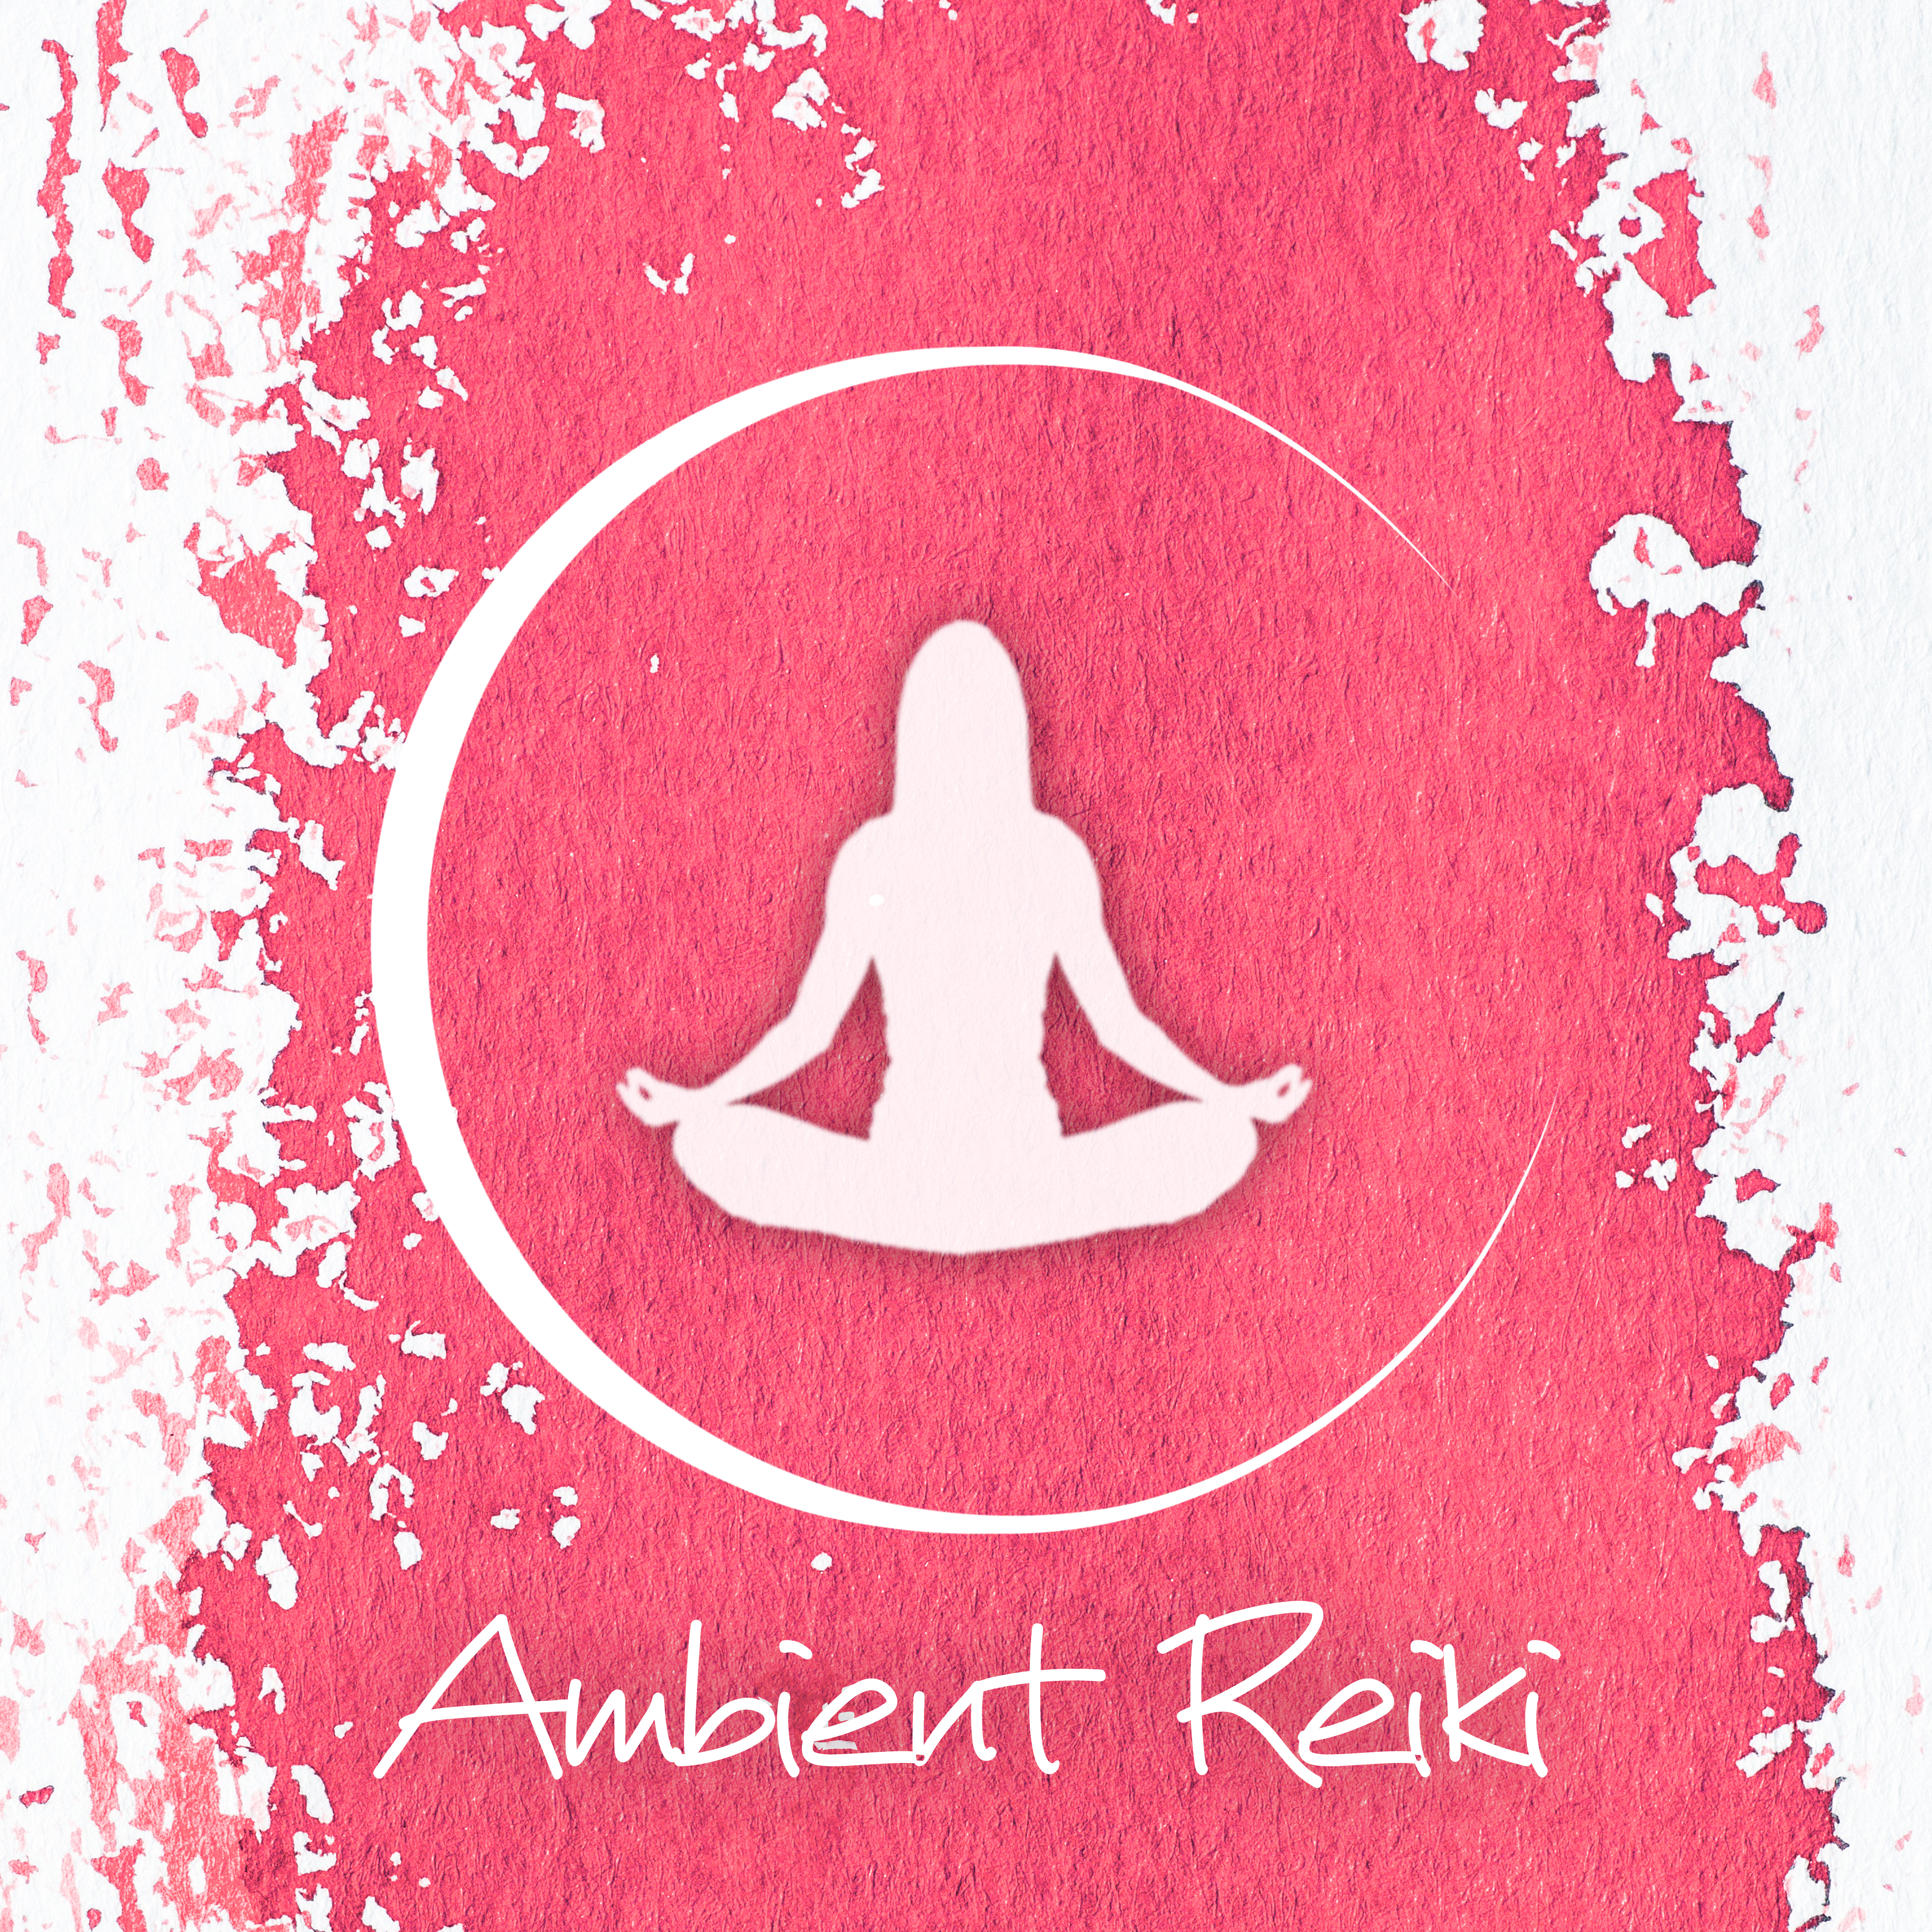 Ambient Reiki - Relaxing Healing Music, Nature Sounds, Zen Meditation, Yoga, Deep Sleep